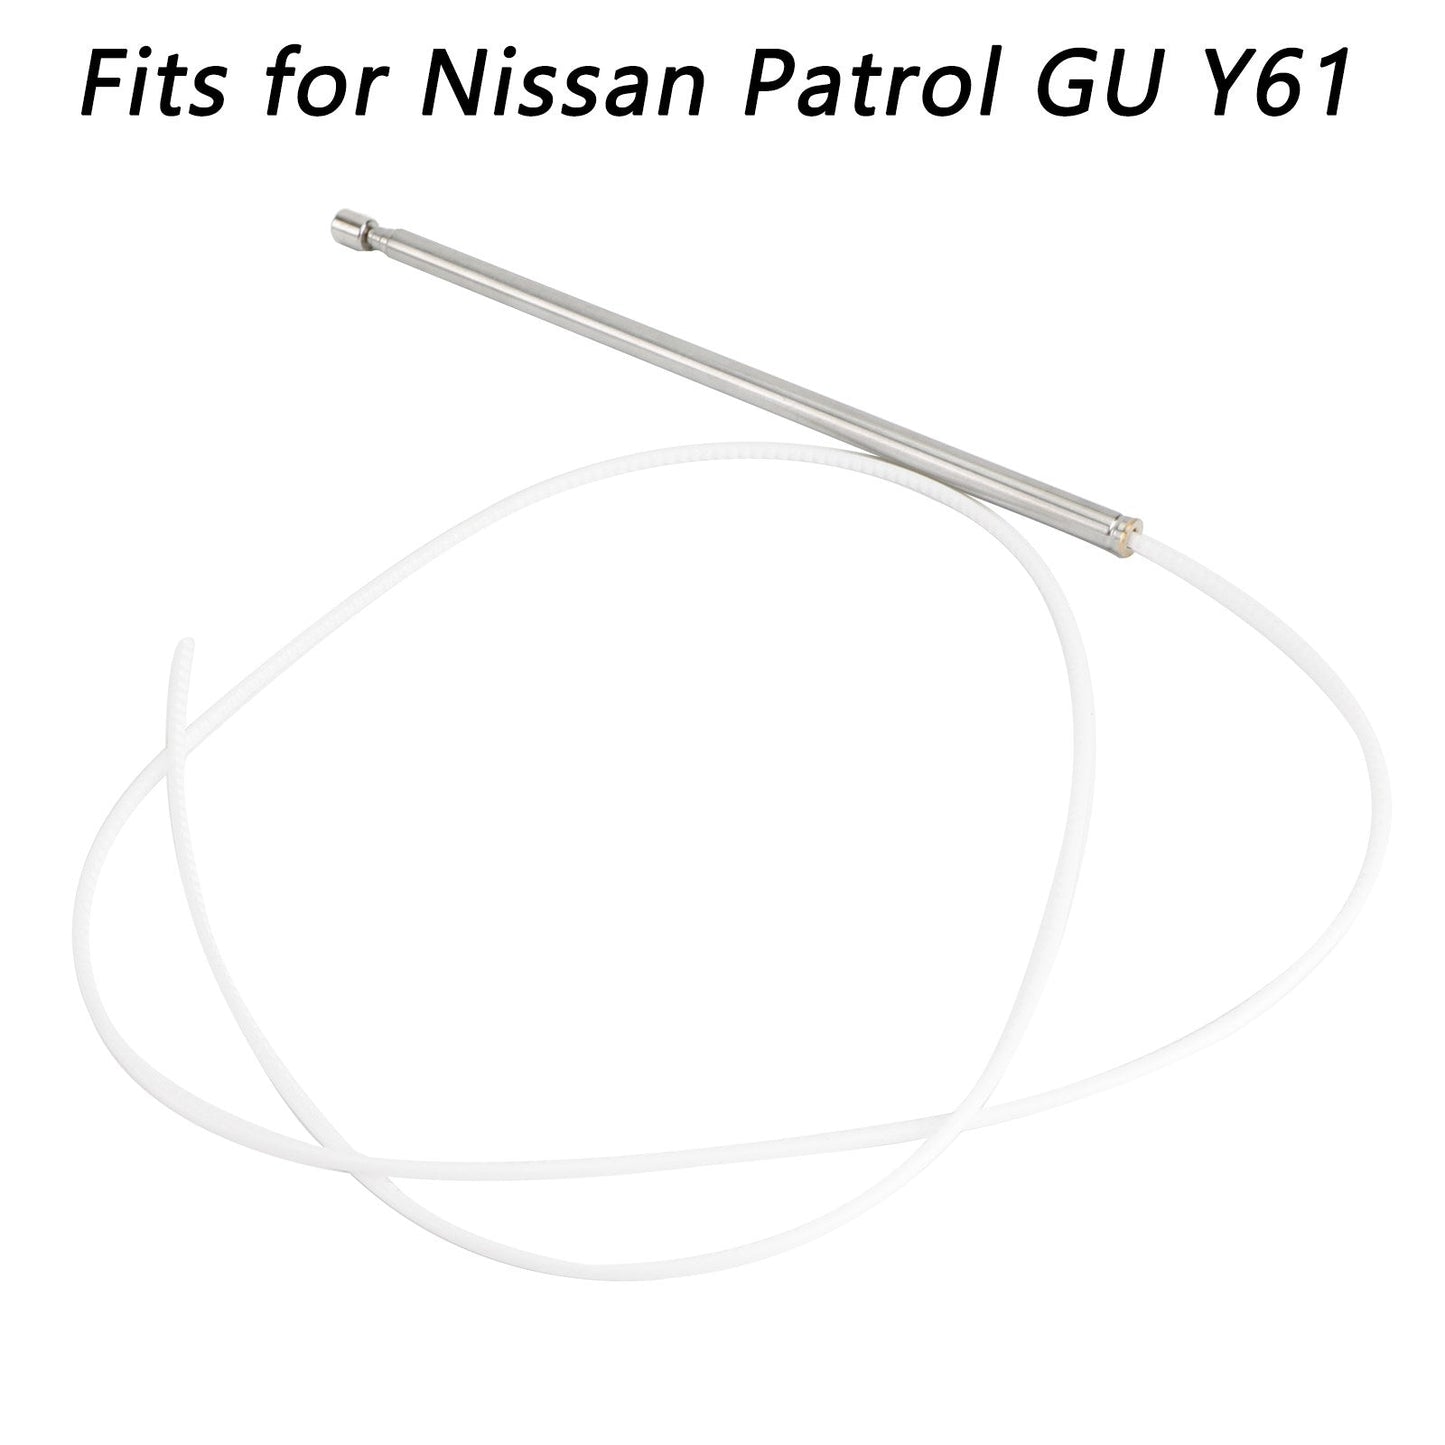 Power Antenna Mast FYE014012 Fits For Nissan Patrol GU Y61